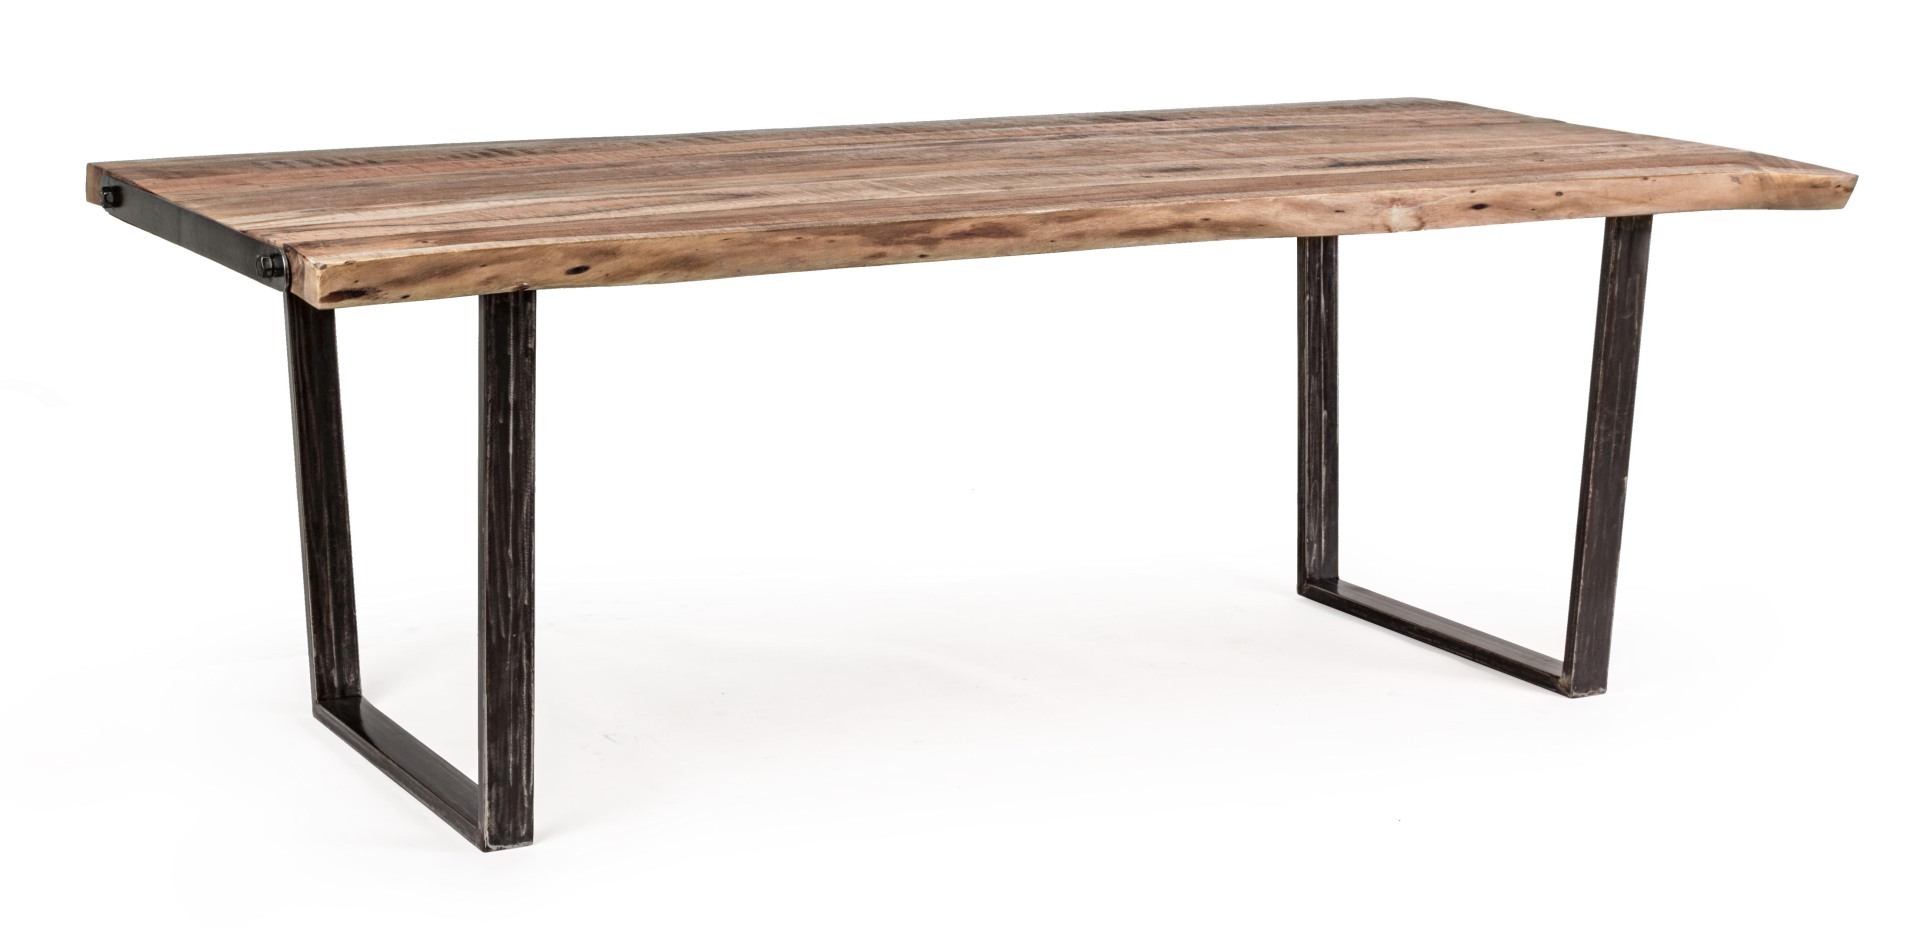 Der Esstisch Elmer überzeugt mit seinem moderndem Design. Gefertigt wurde er aus Akazienholz, welches einen natürlichen Farbton besitzt. Das Gestell des Tisches ist aus Metall und ist in eine schwarze Farbe. Der Tisch besitzt eine Breite von 220 cm.